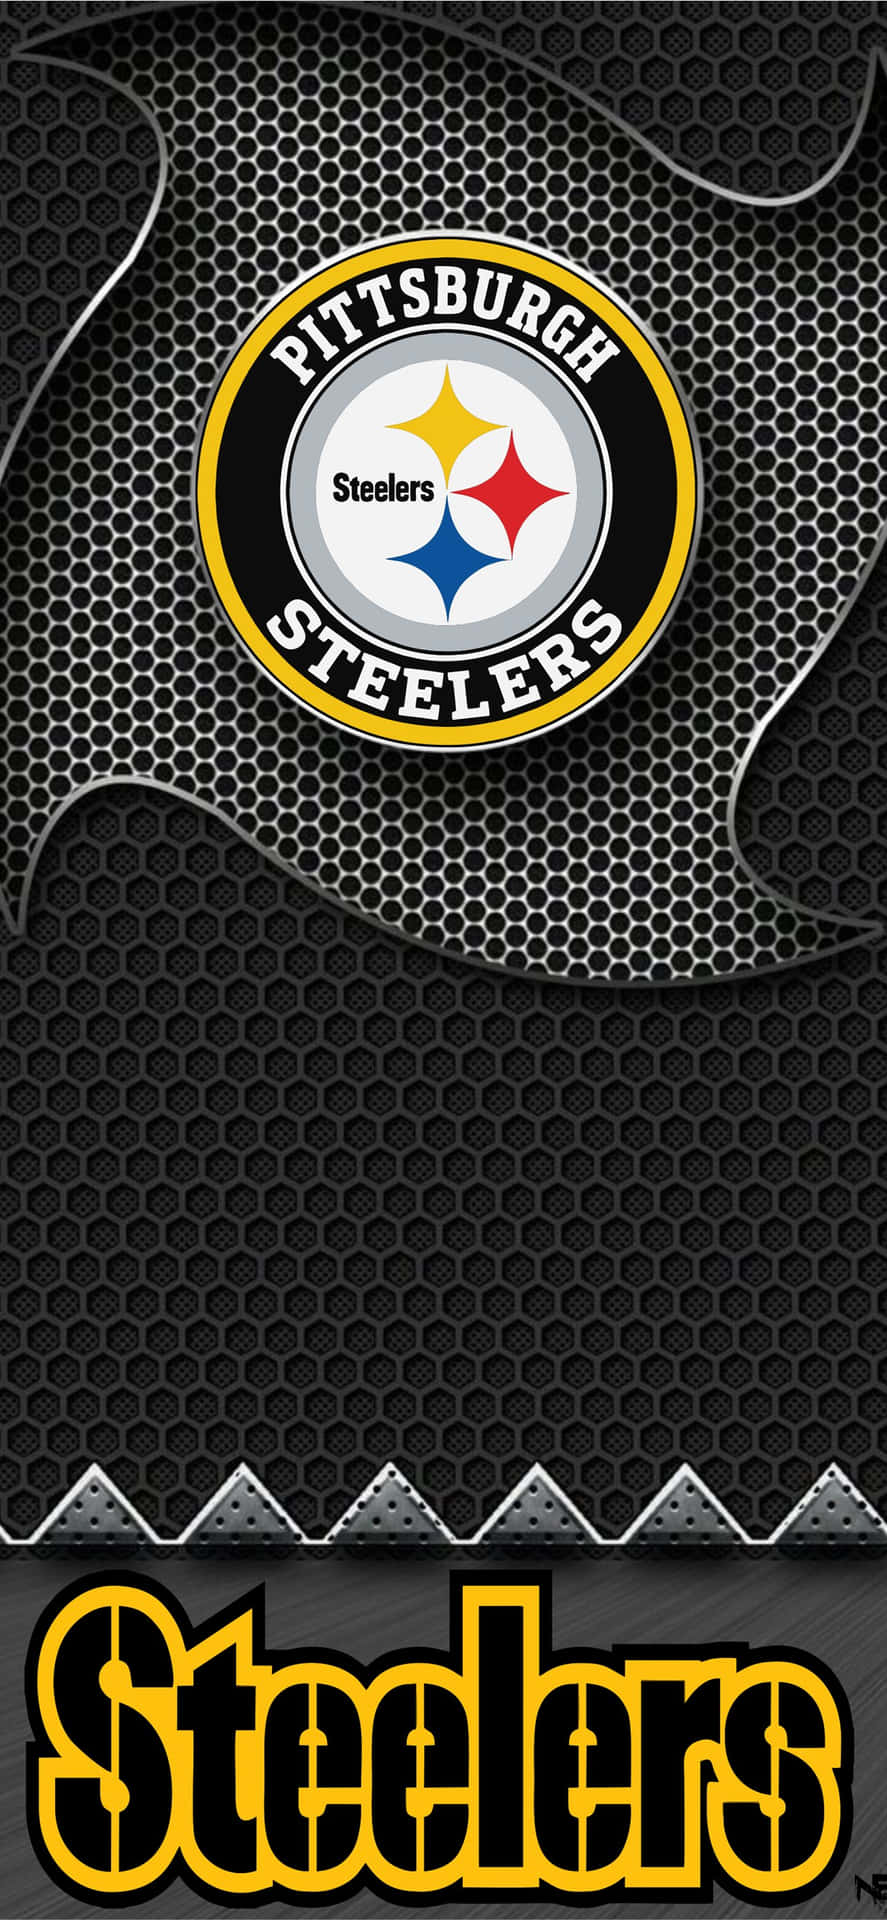 Itifosi Della Nfl Si Rallegrano: Mostra Il Tuo Orgoglio Per La Tua Squadra Con Uno Sfondo Per Iphone Degli Steelers. Sfondo